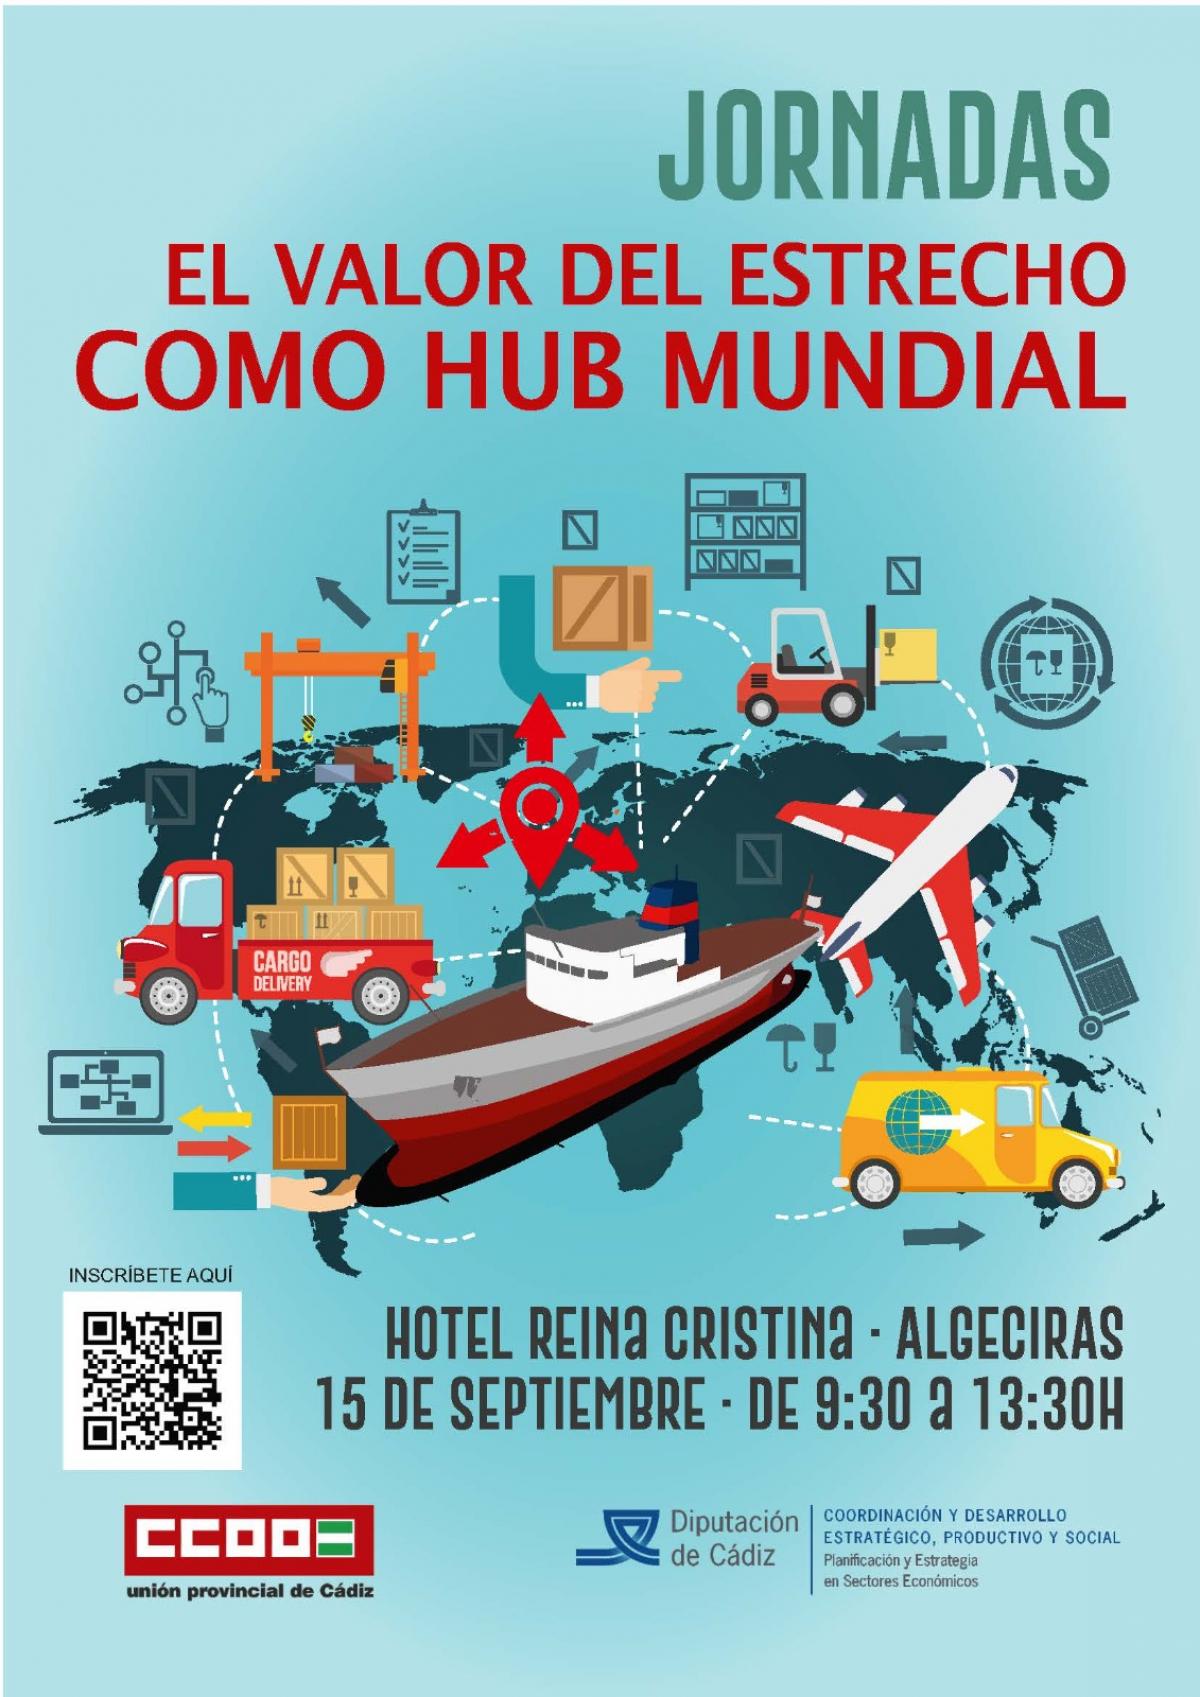 “El Valor del Estrecho como Hub Mundial”, CCOO ha organizado una Jornada en la que se abordará la situación actual y los retos de futuro del sector logístico en el Campo de Gibraltar